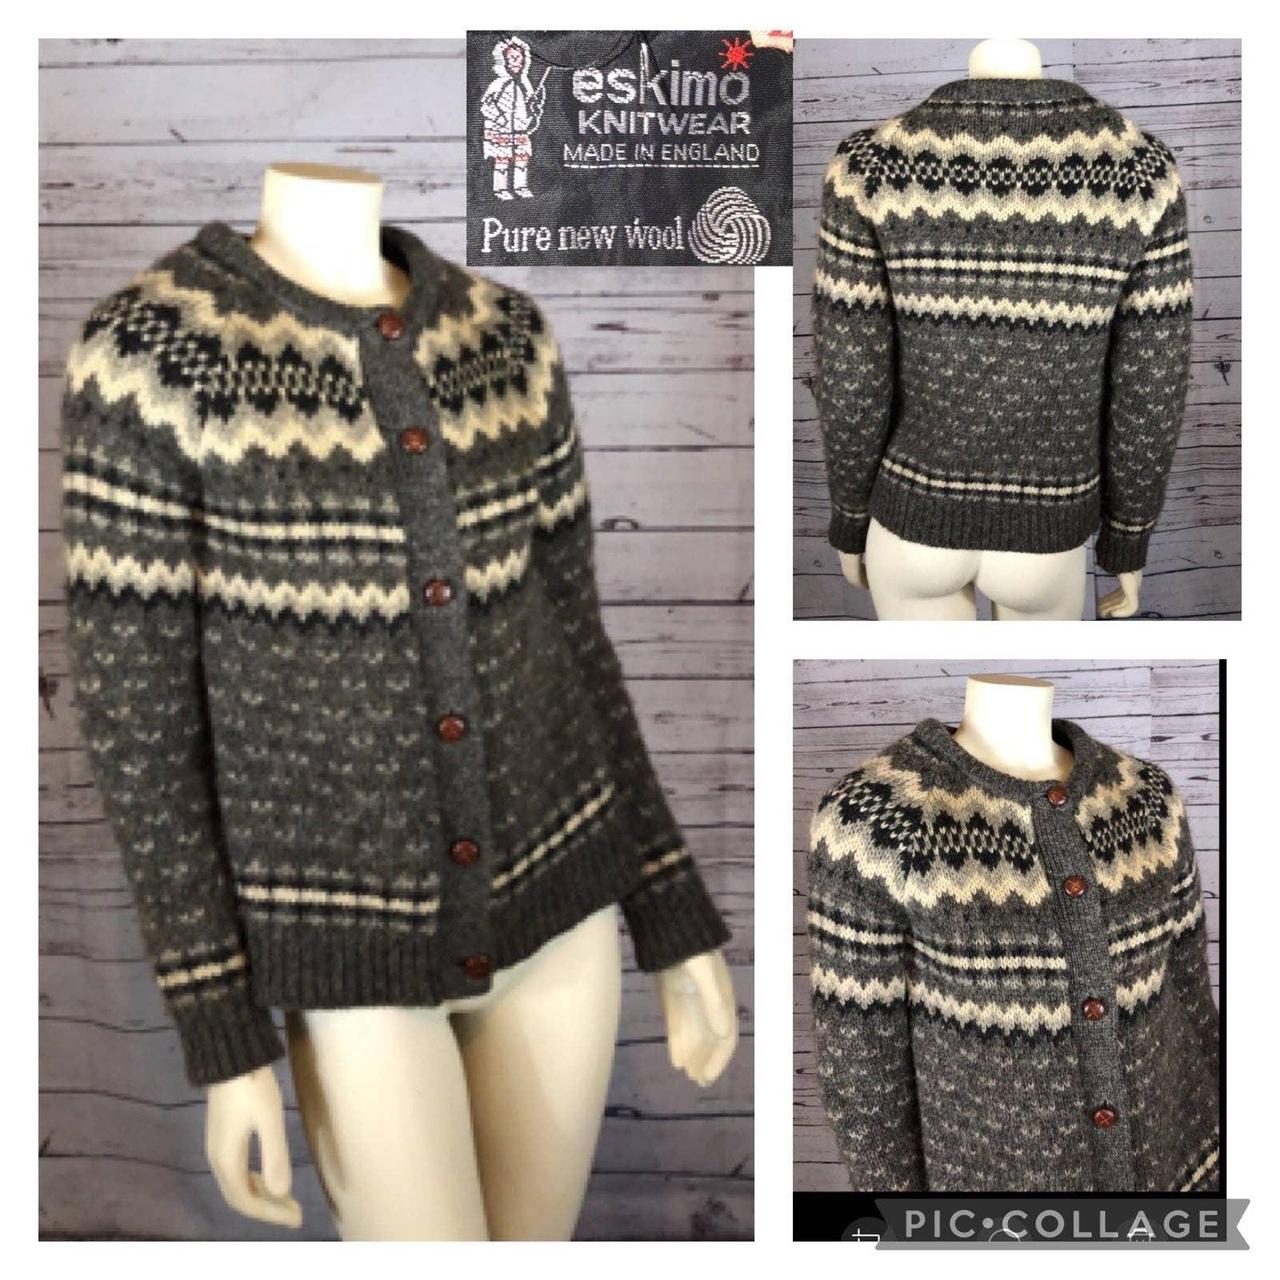 Eskimo Knitwear made in England sweater Lovely knit... - Depop